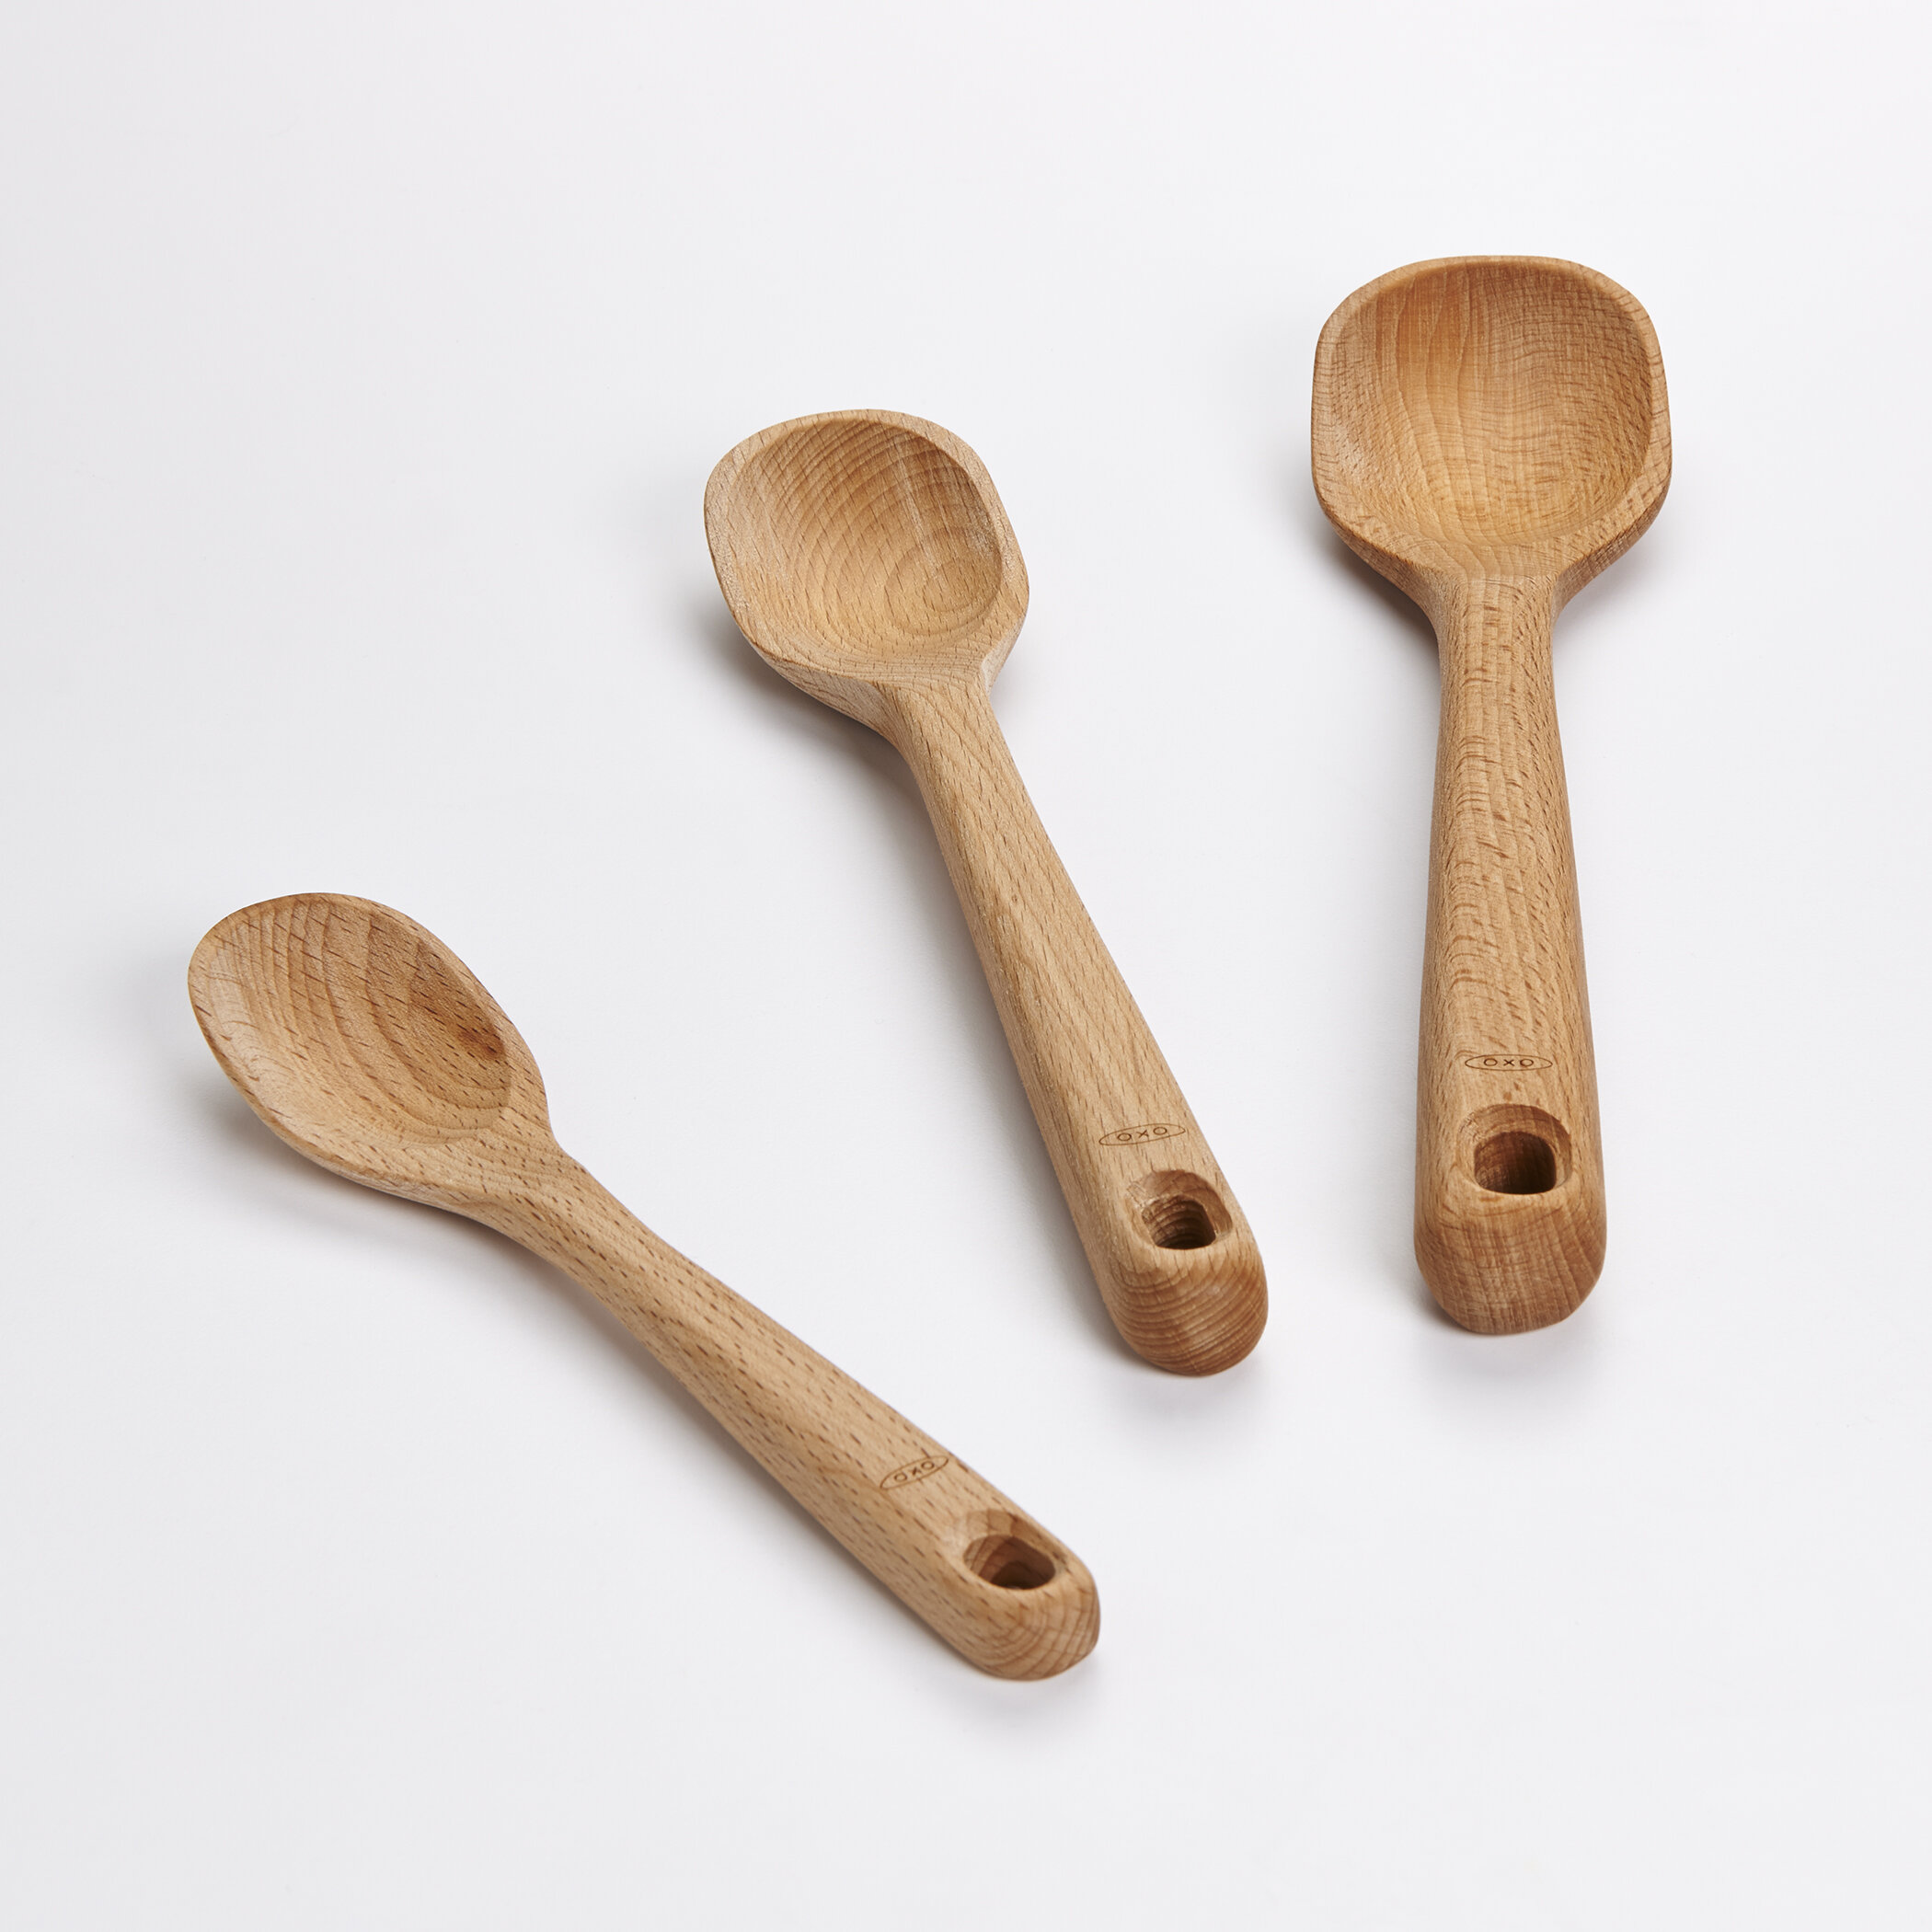 https://assets.wfcdn.com/im/84293713/compr-r85/1456/14567107/oxo-good-grips-3-piece-wooden-spoon-set.jpg